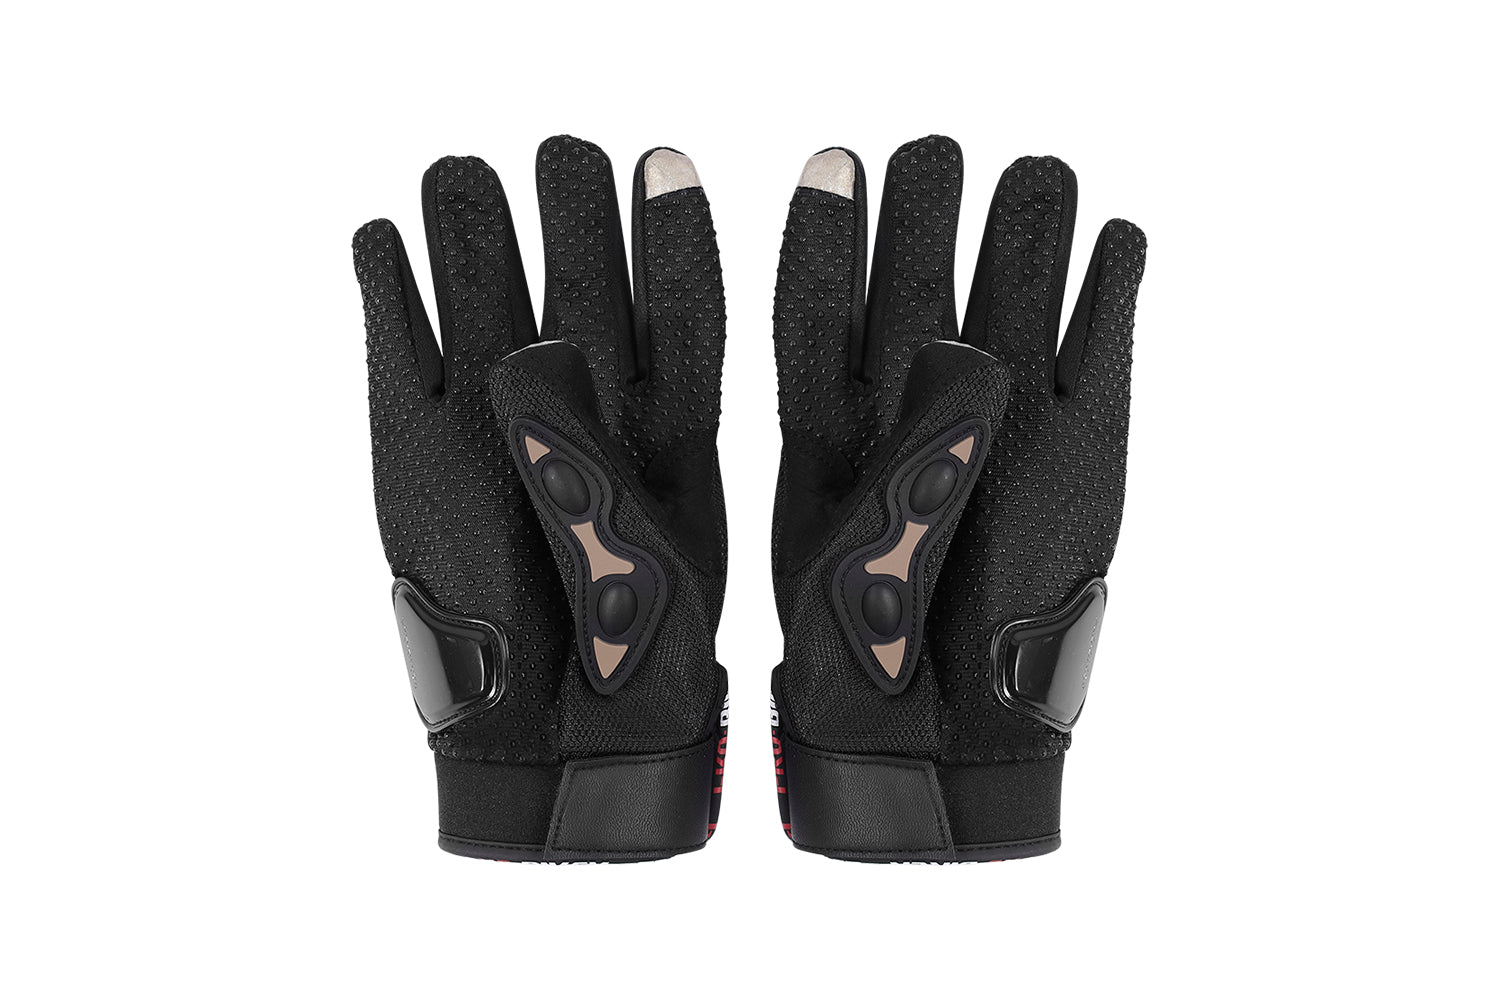 HAOQI Winter Warm Touchscreen Waterproof Cycling Gloves